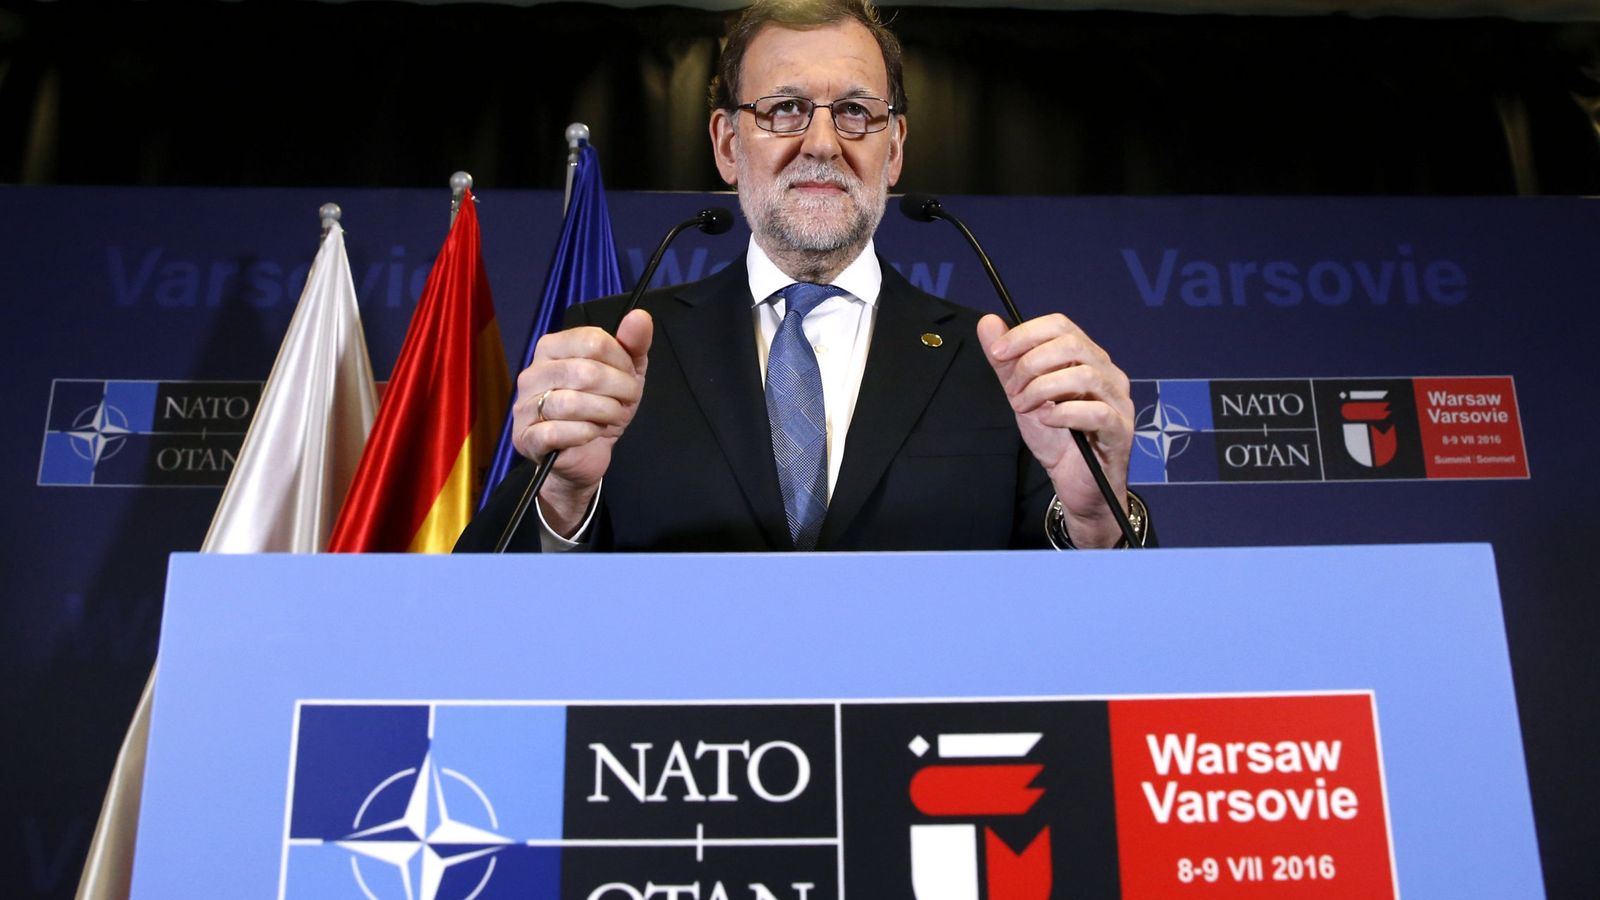 Foto: El presidente del Gobierno en funciones, Mariano Rajoy, tras la sesión plenaria del Consejo del Atlántico Norte en Varsovia. (EFE)